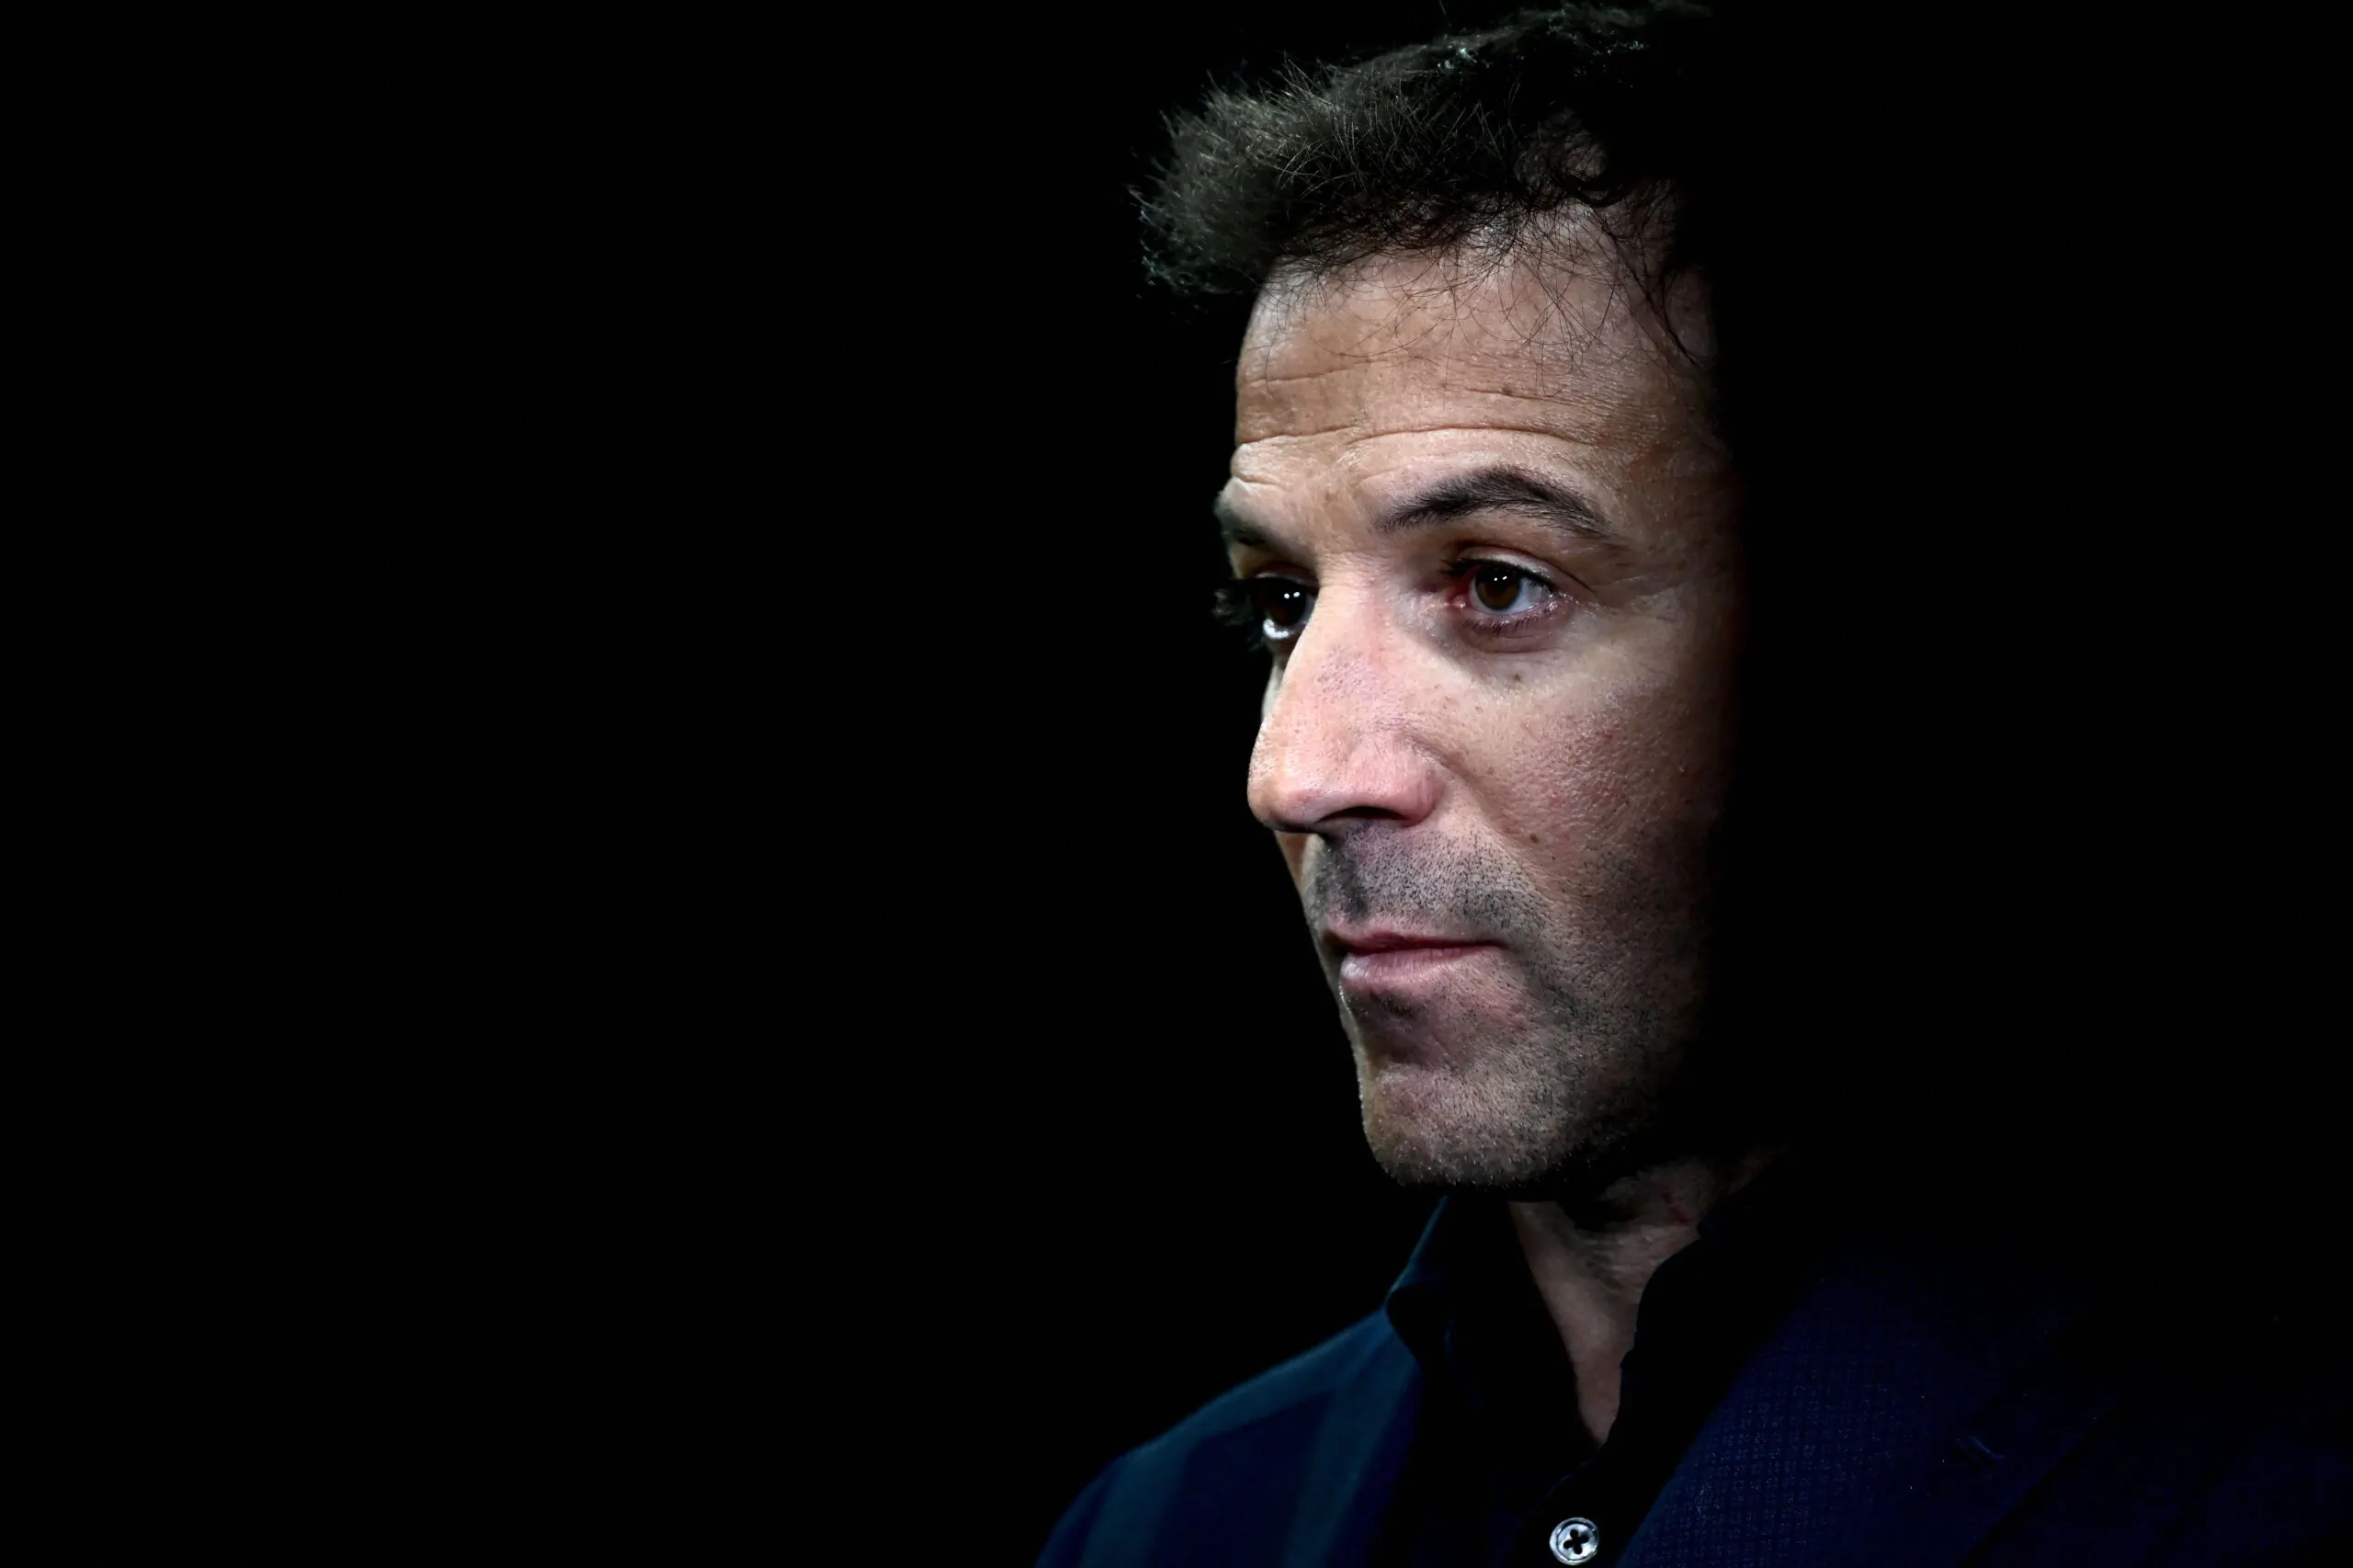 Terremoto Juventus, parla Del Piero: “Spero tutto si risolva presto!”, poi il commento sul suo futuro